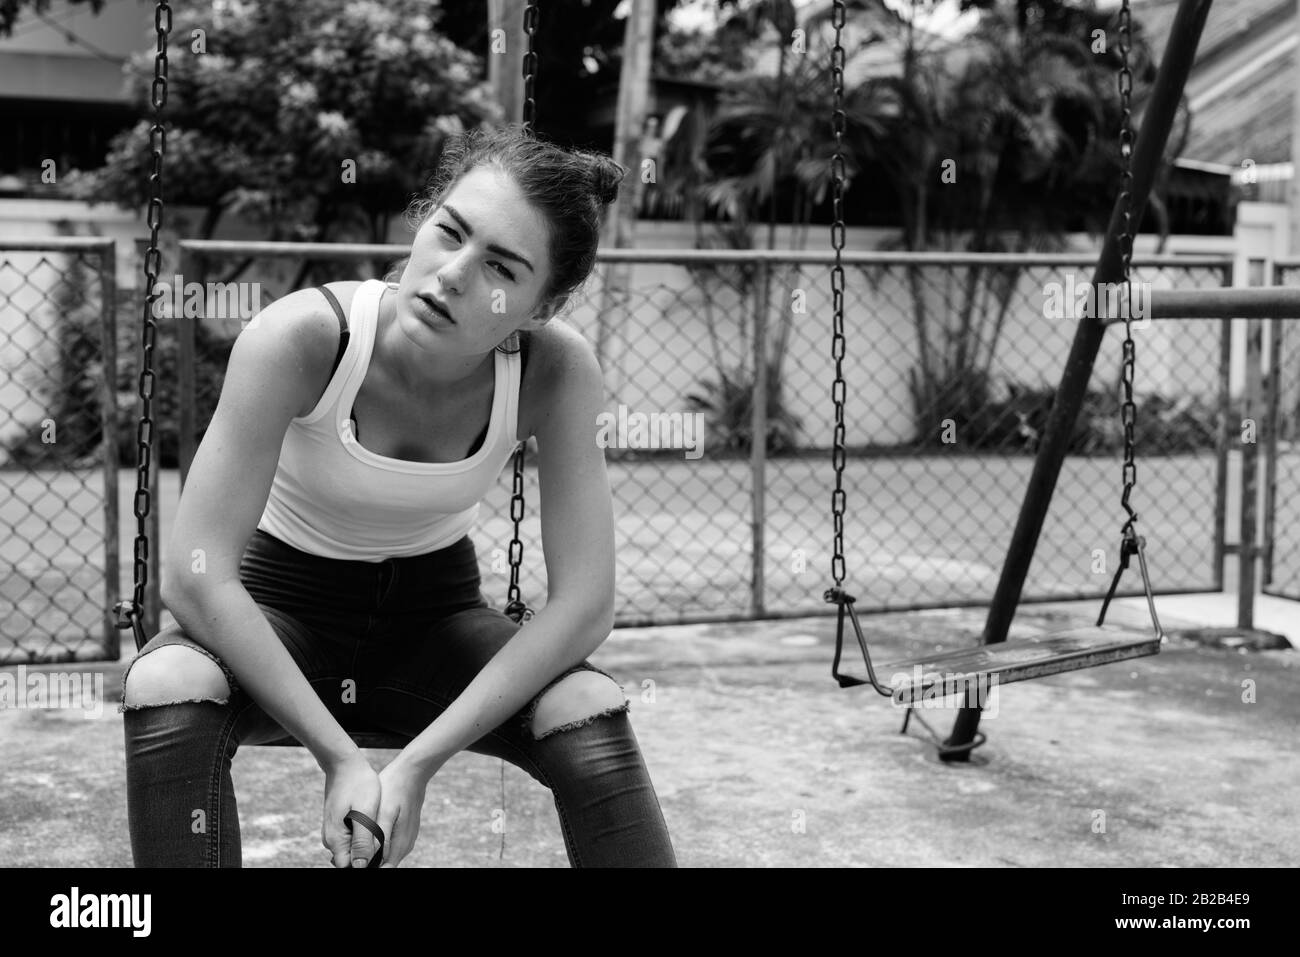 Young teenage girl sitting on the metal swing dans de vieux jeux pour enfants Banque D'Images